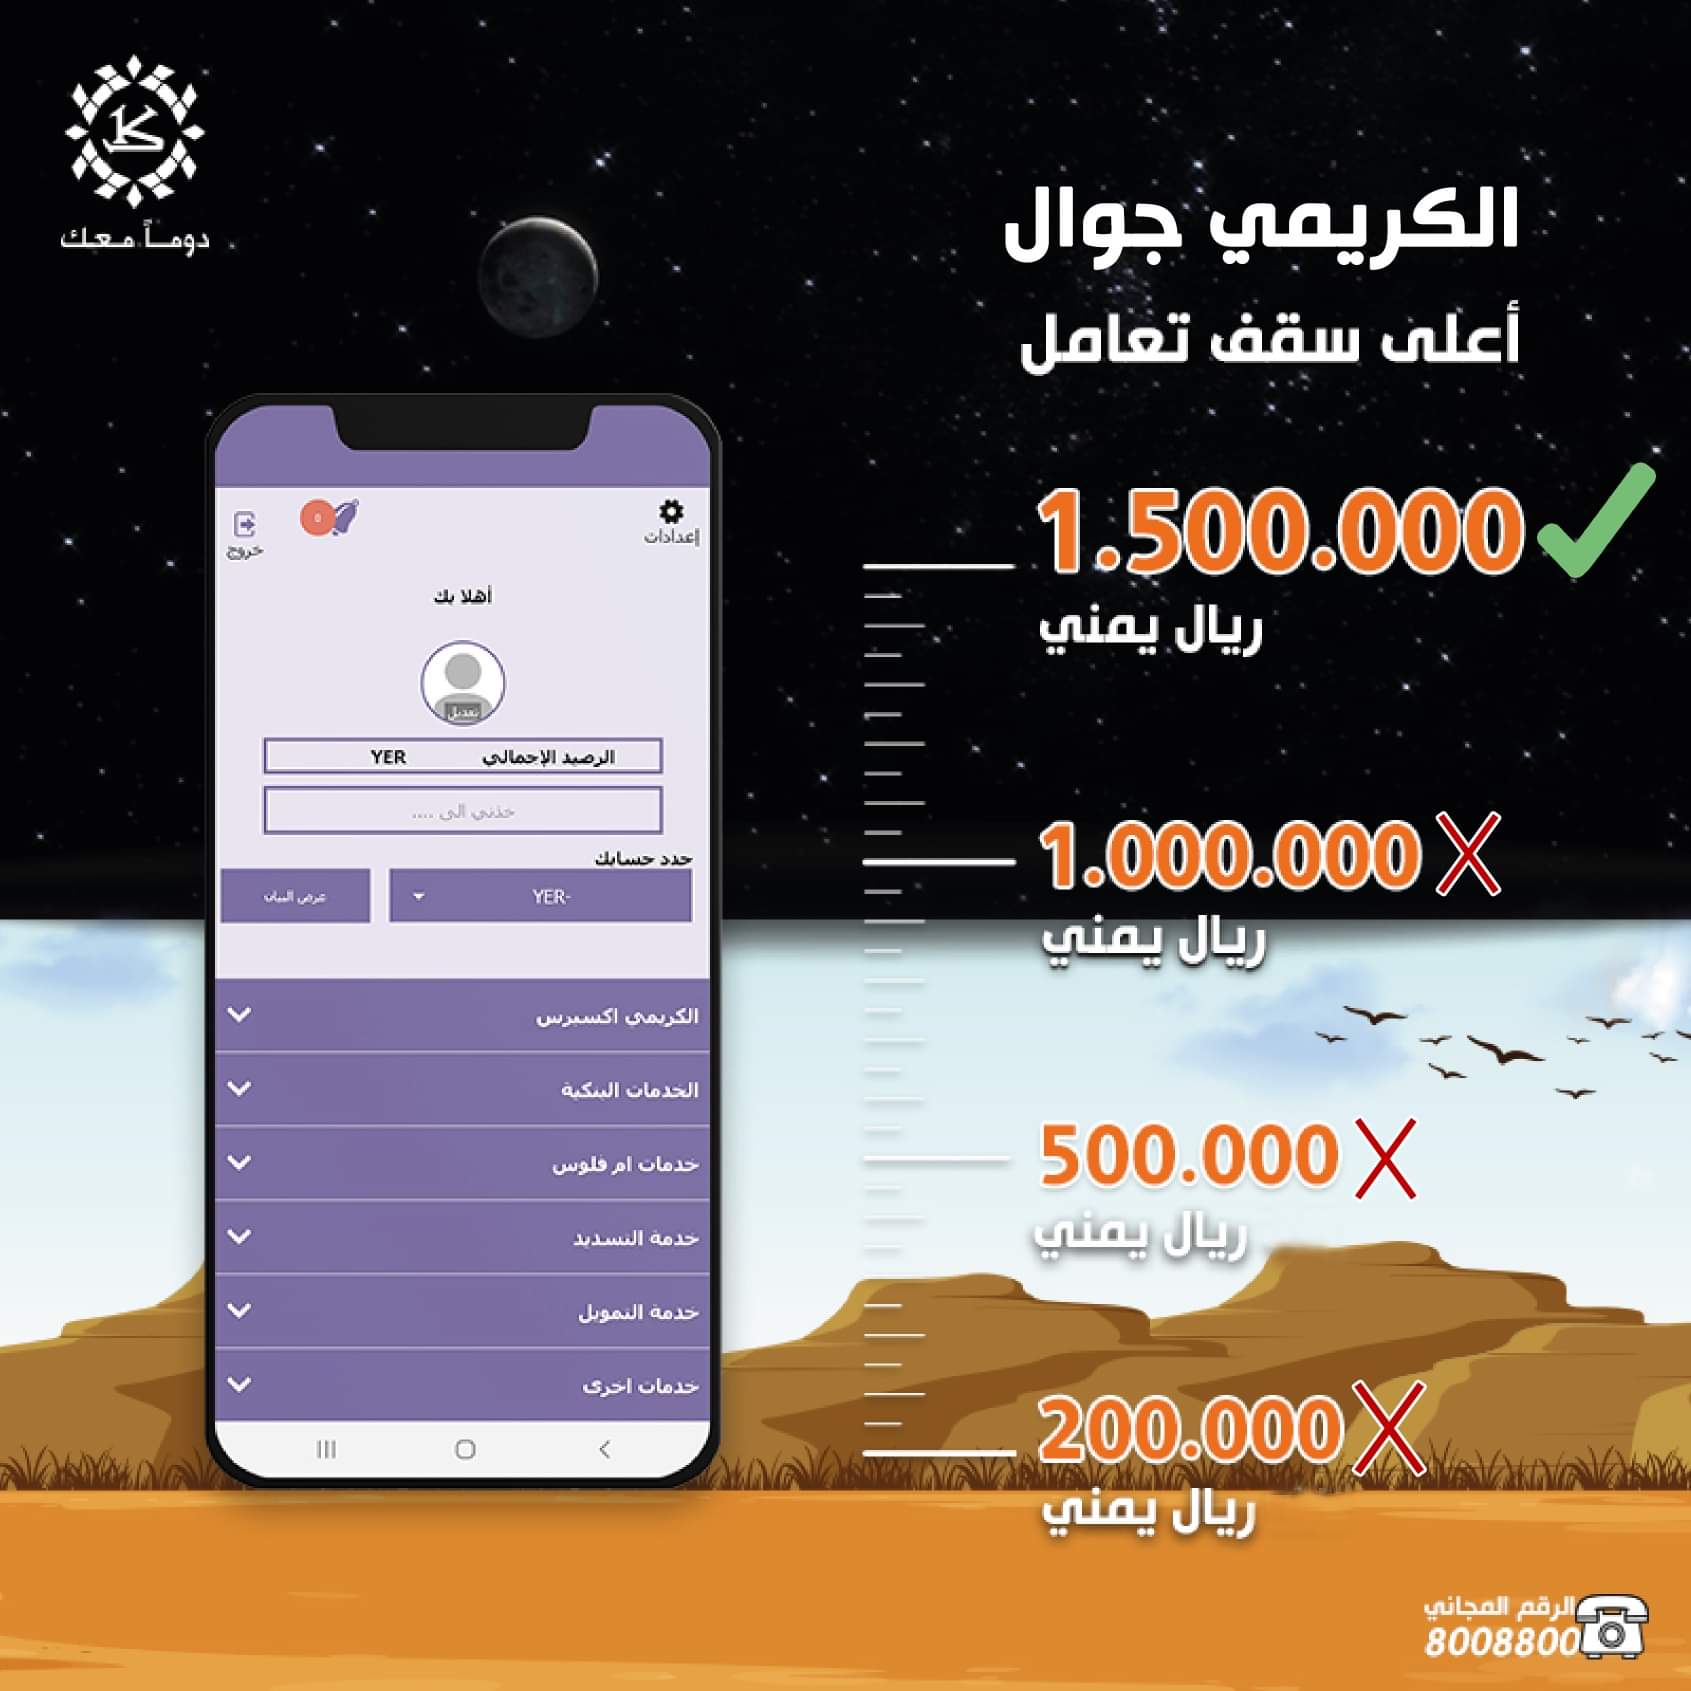 اليمن بنك الكريمي يعلن عن رفع سقف التعامل اليومي للتطبيق لأكثر من مليون نصف المليون ريال